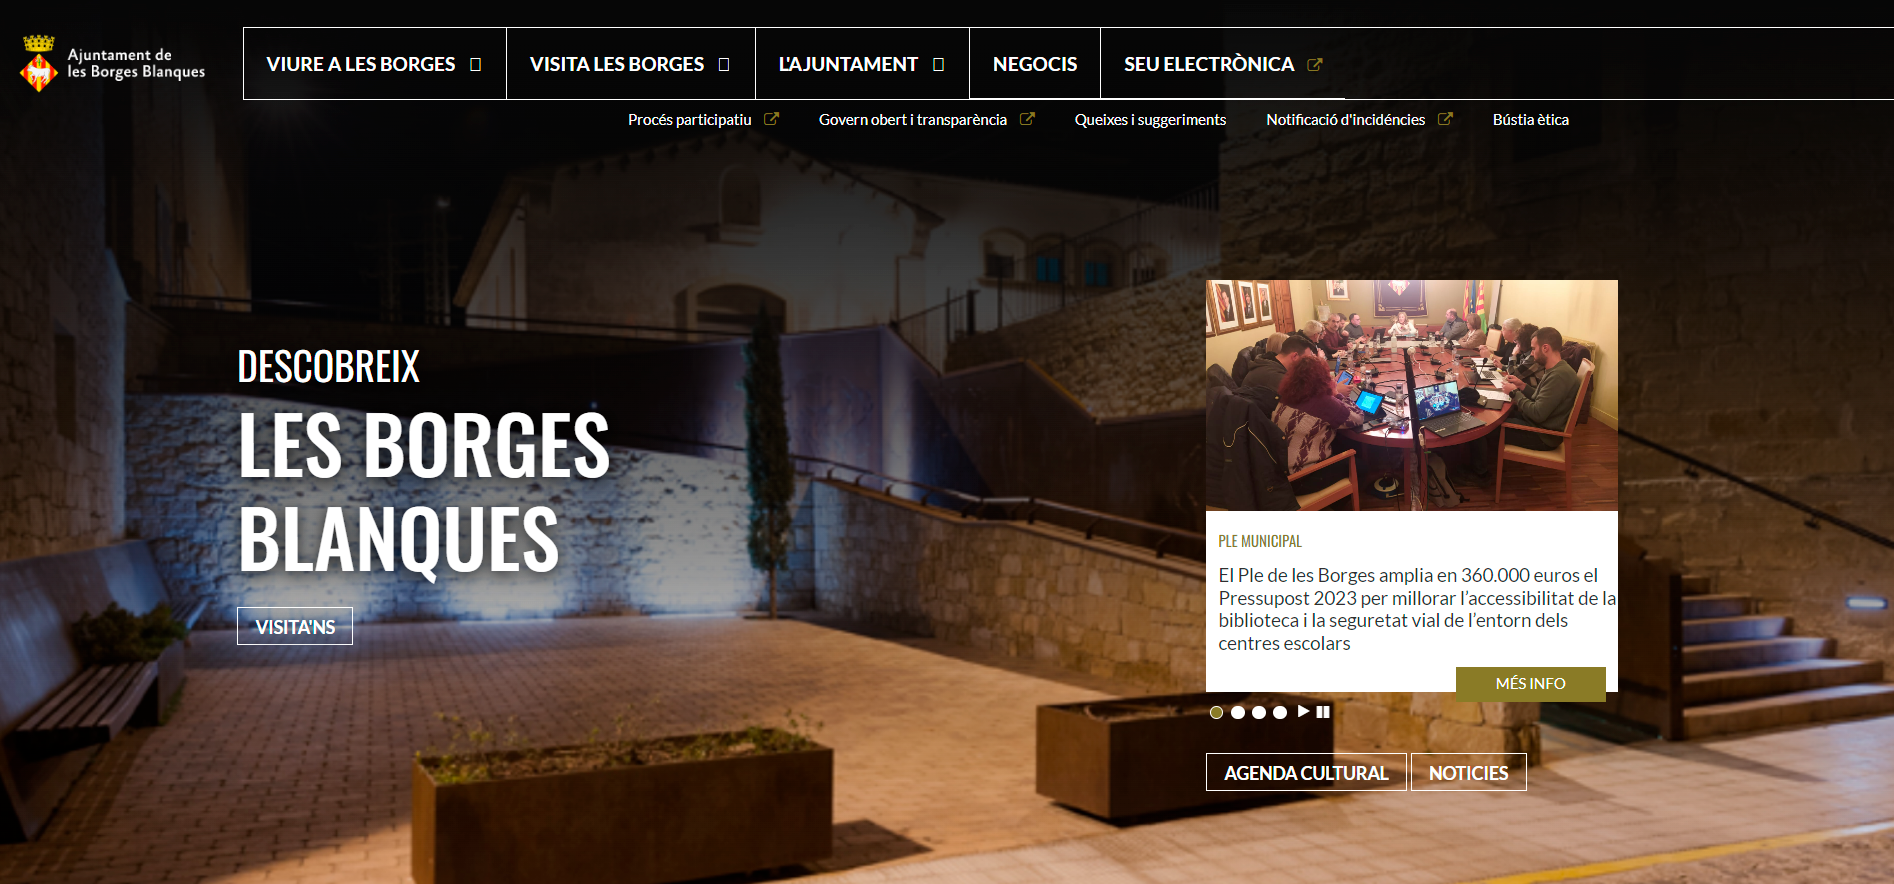 Captura de pantalla de la nova pàgina web del consistori borgenc